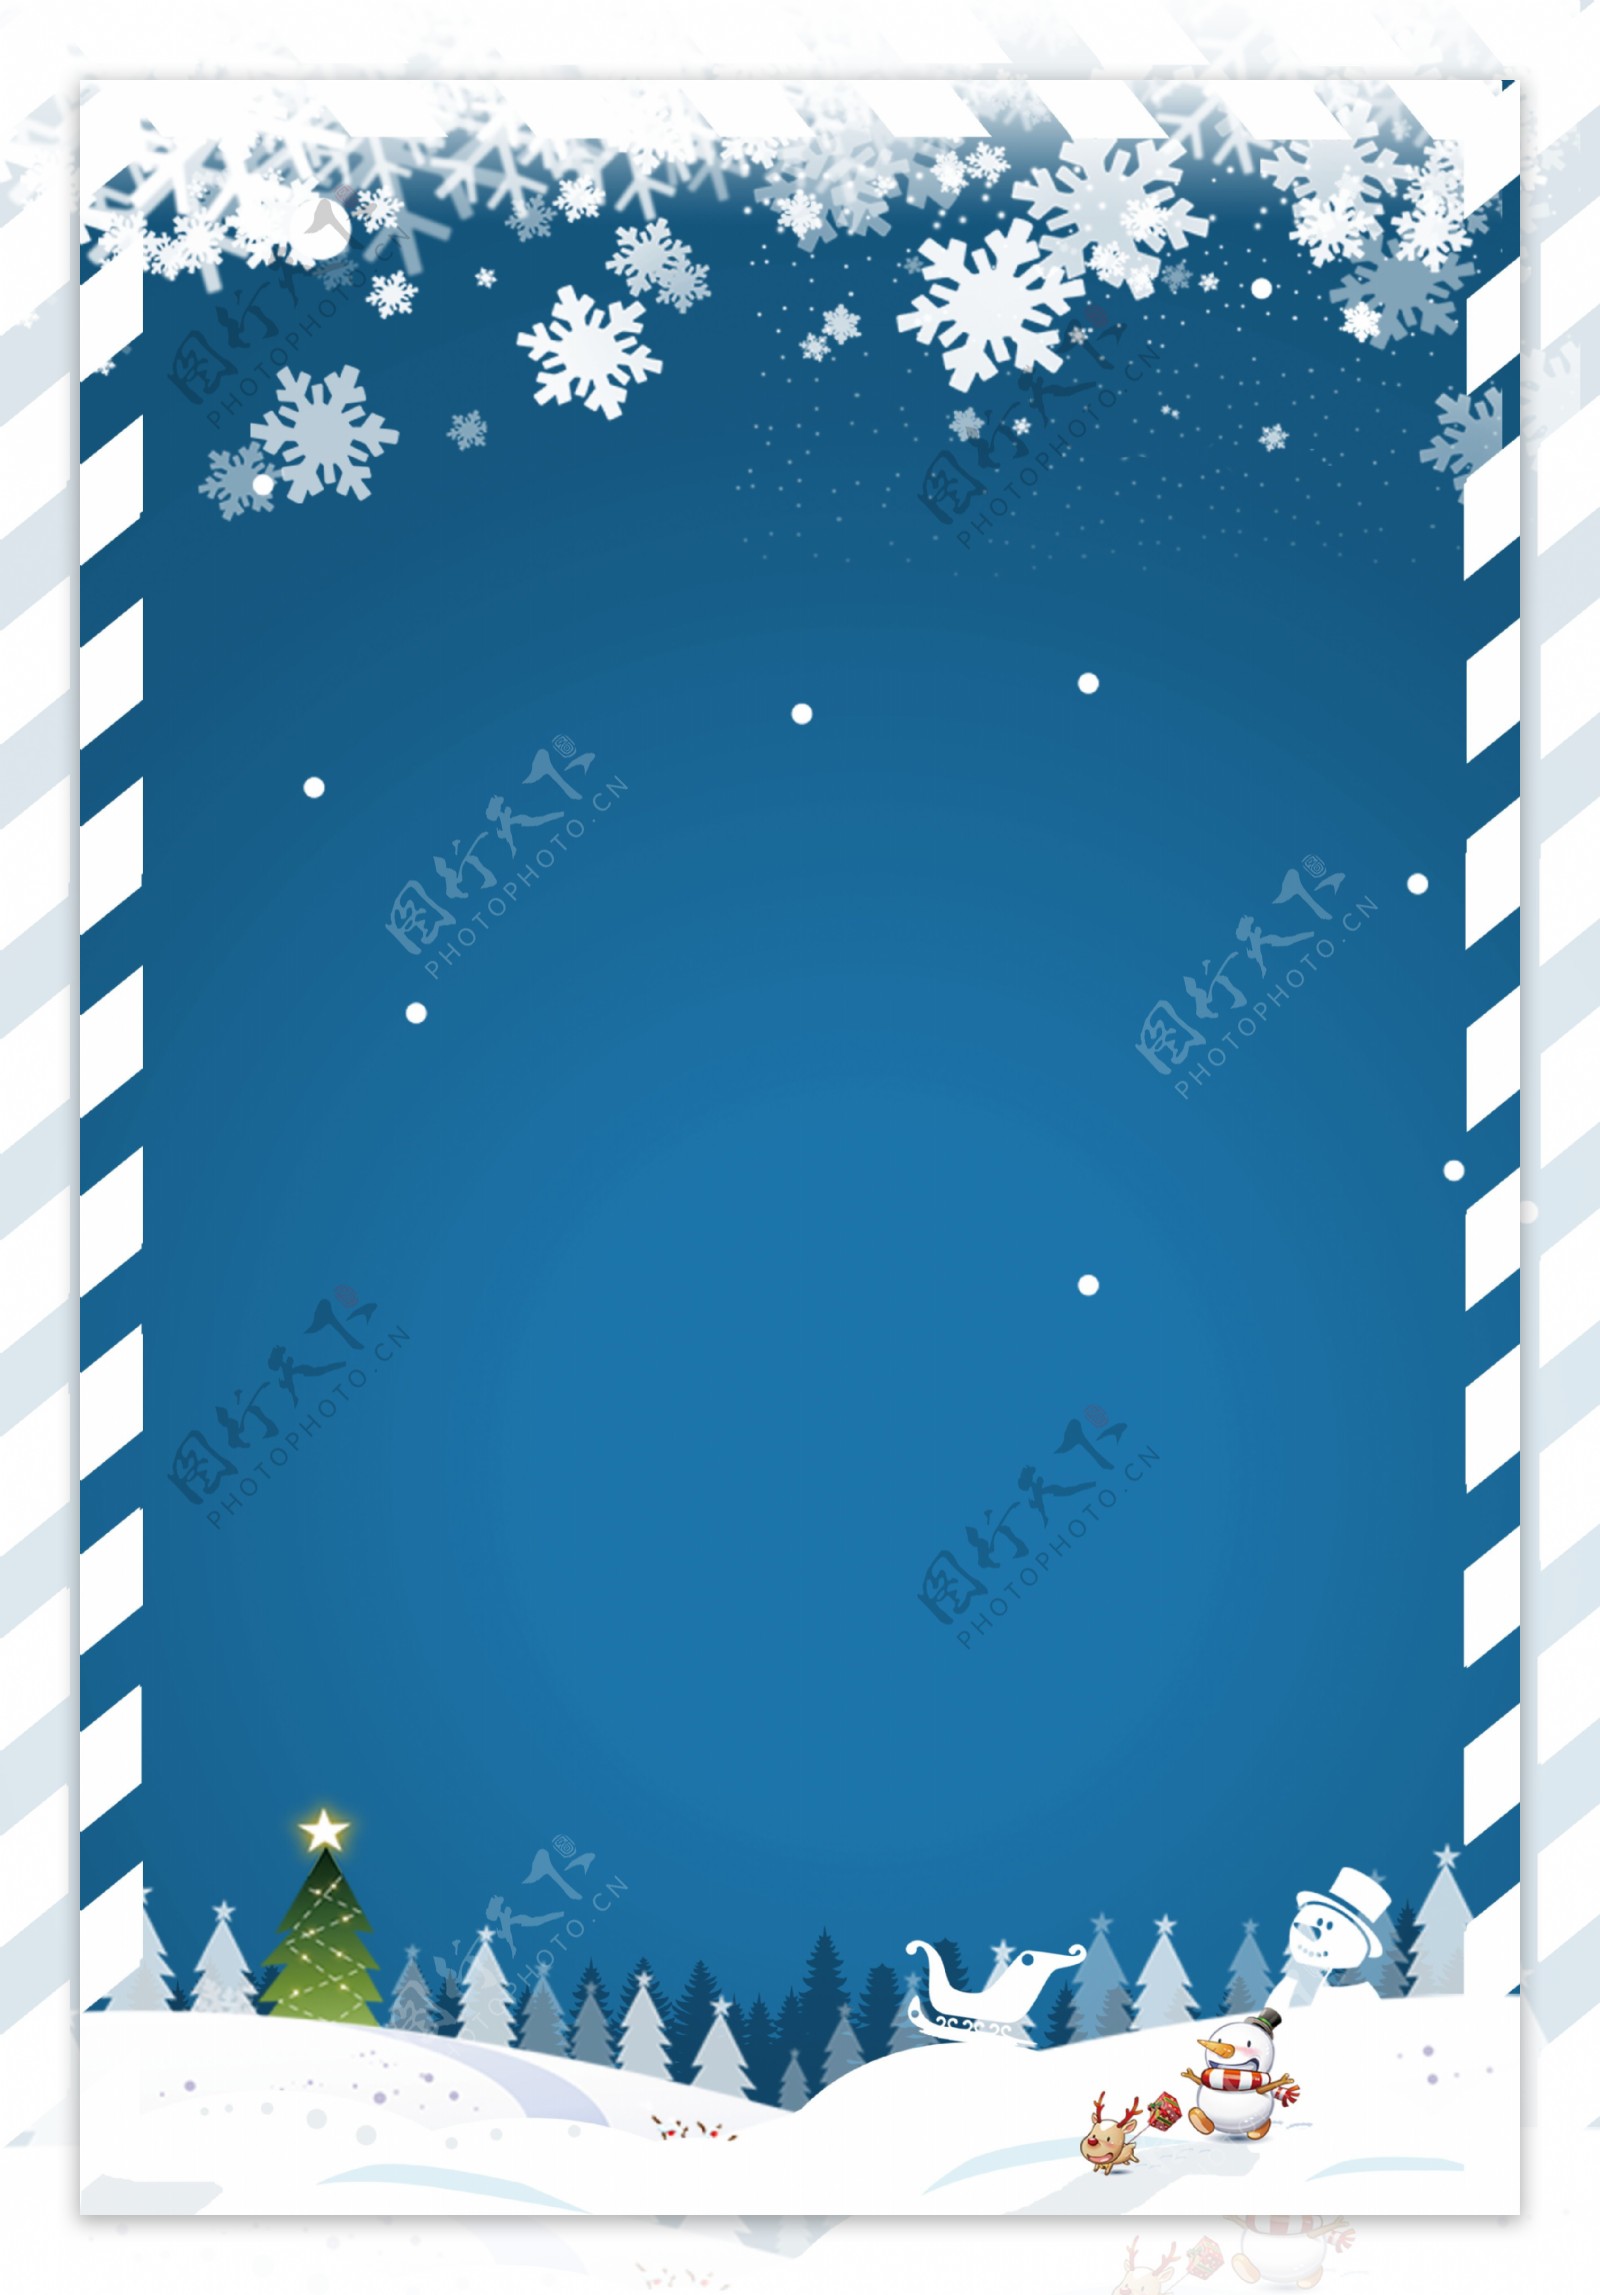 简约蓝色圣诞雪花背景素材